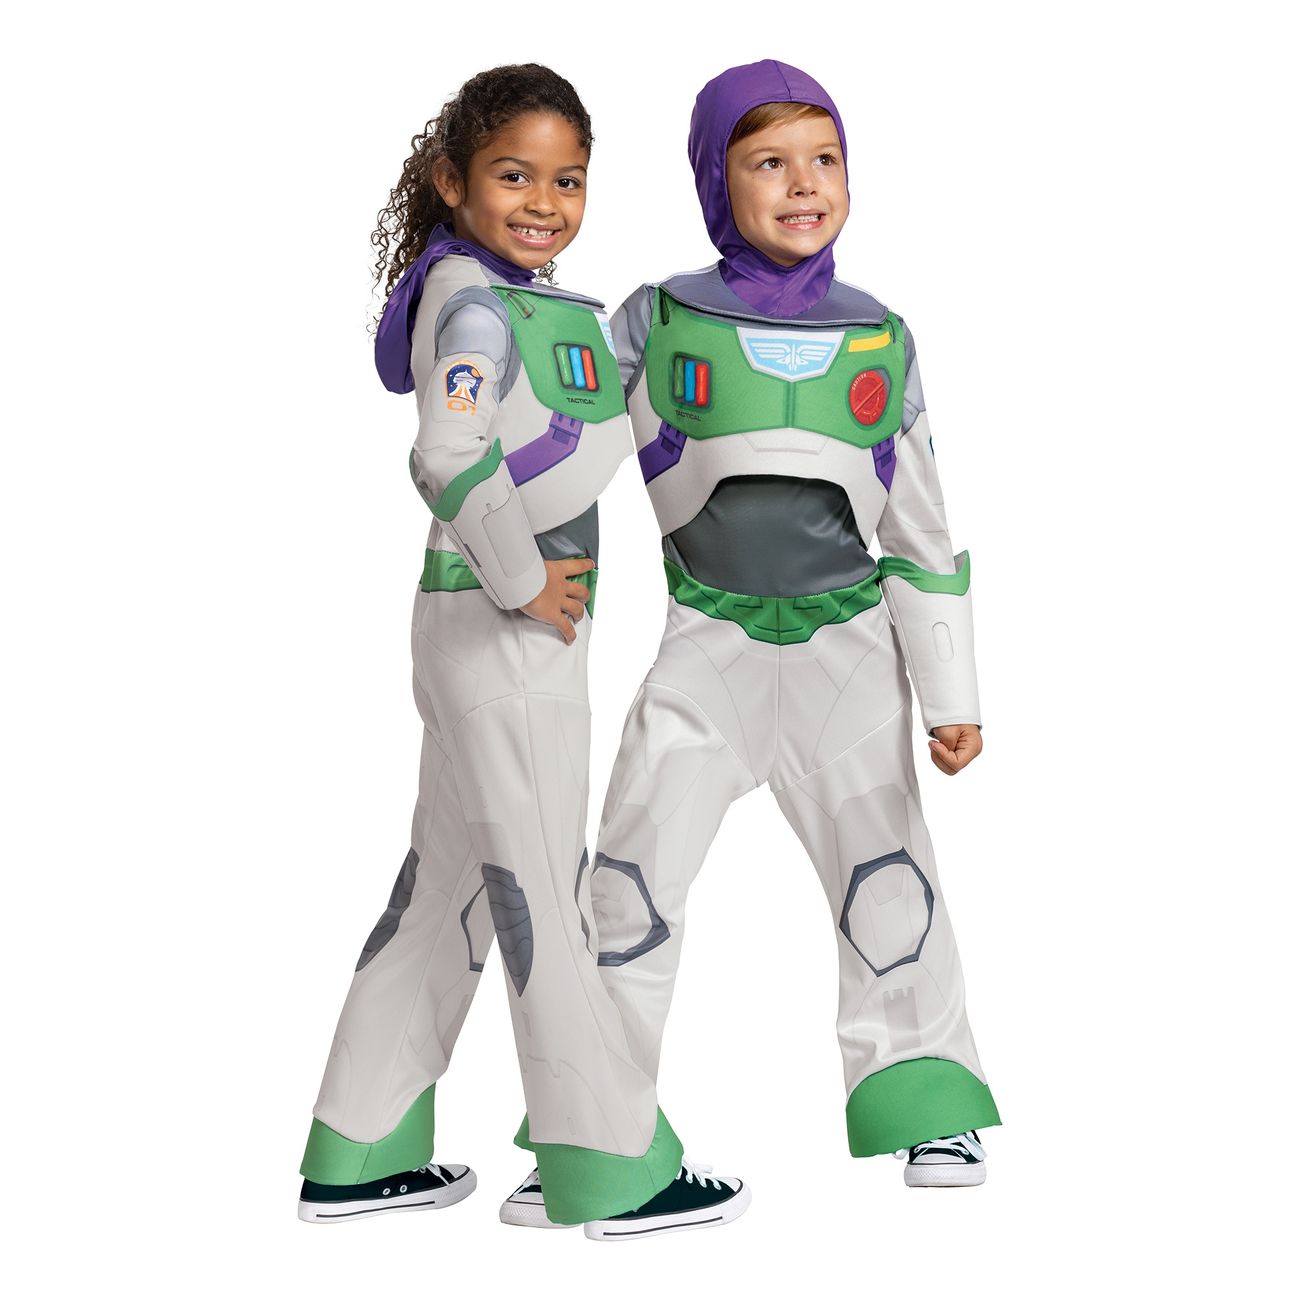 Buzz Lightyear Børnekostume - Toy Story børnekostumer